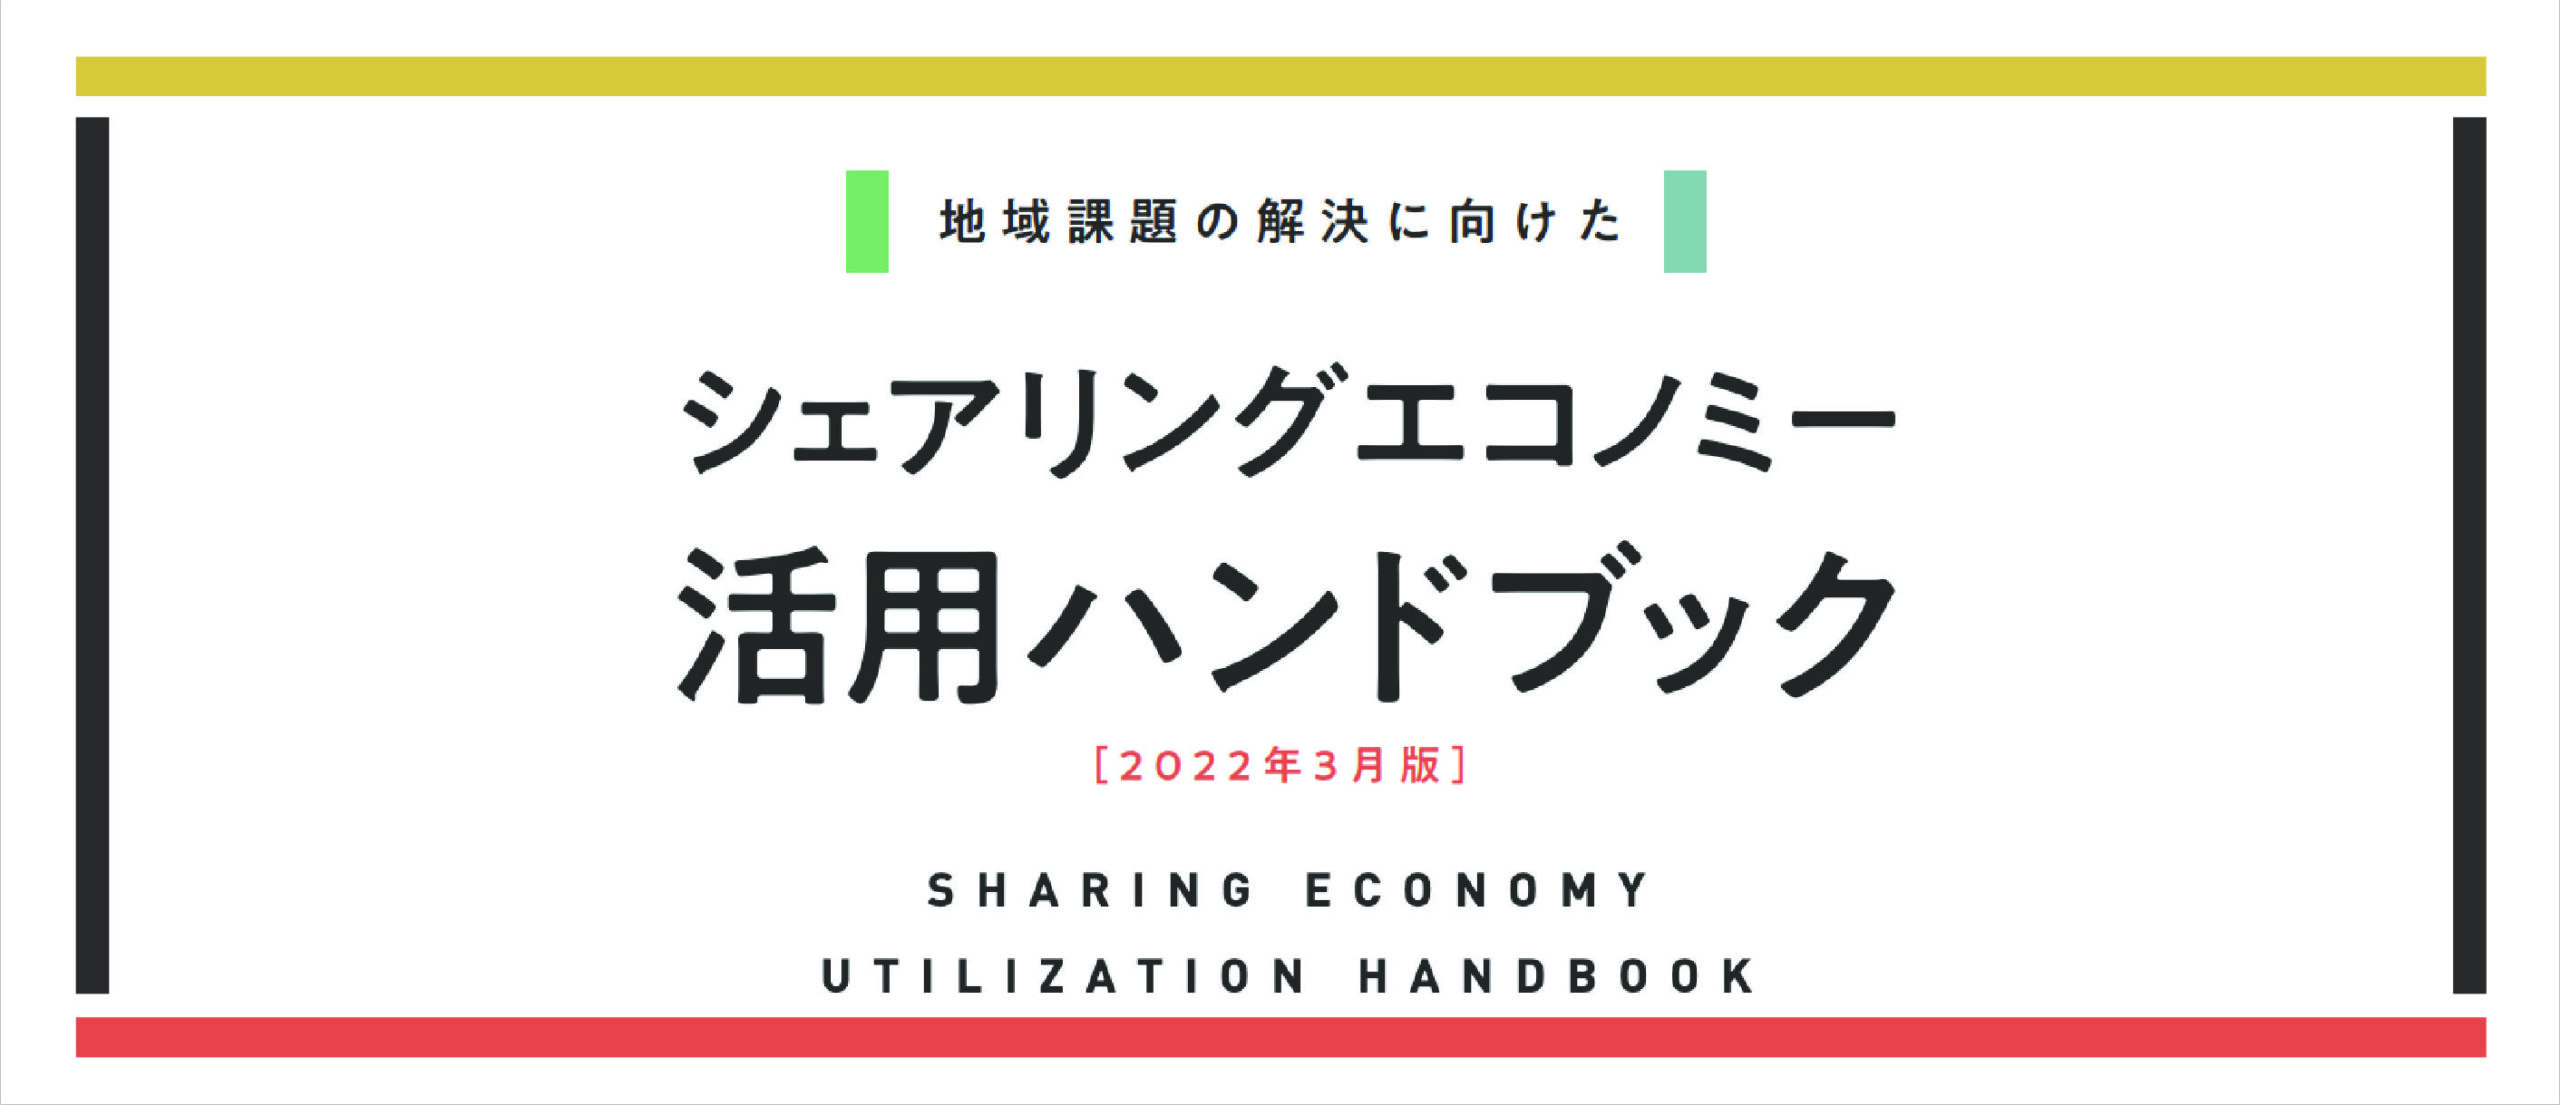 シェアリングエコノミー活用ハンドブック（2022年3月版）を公開しました